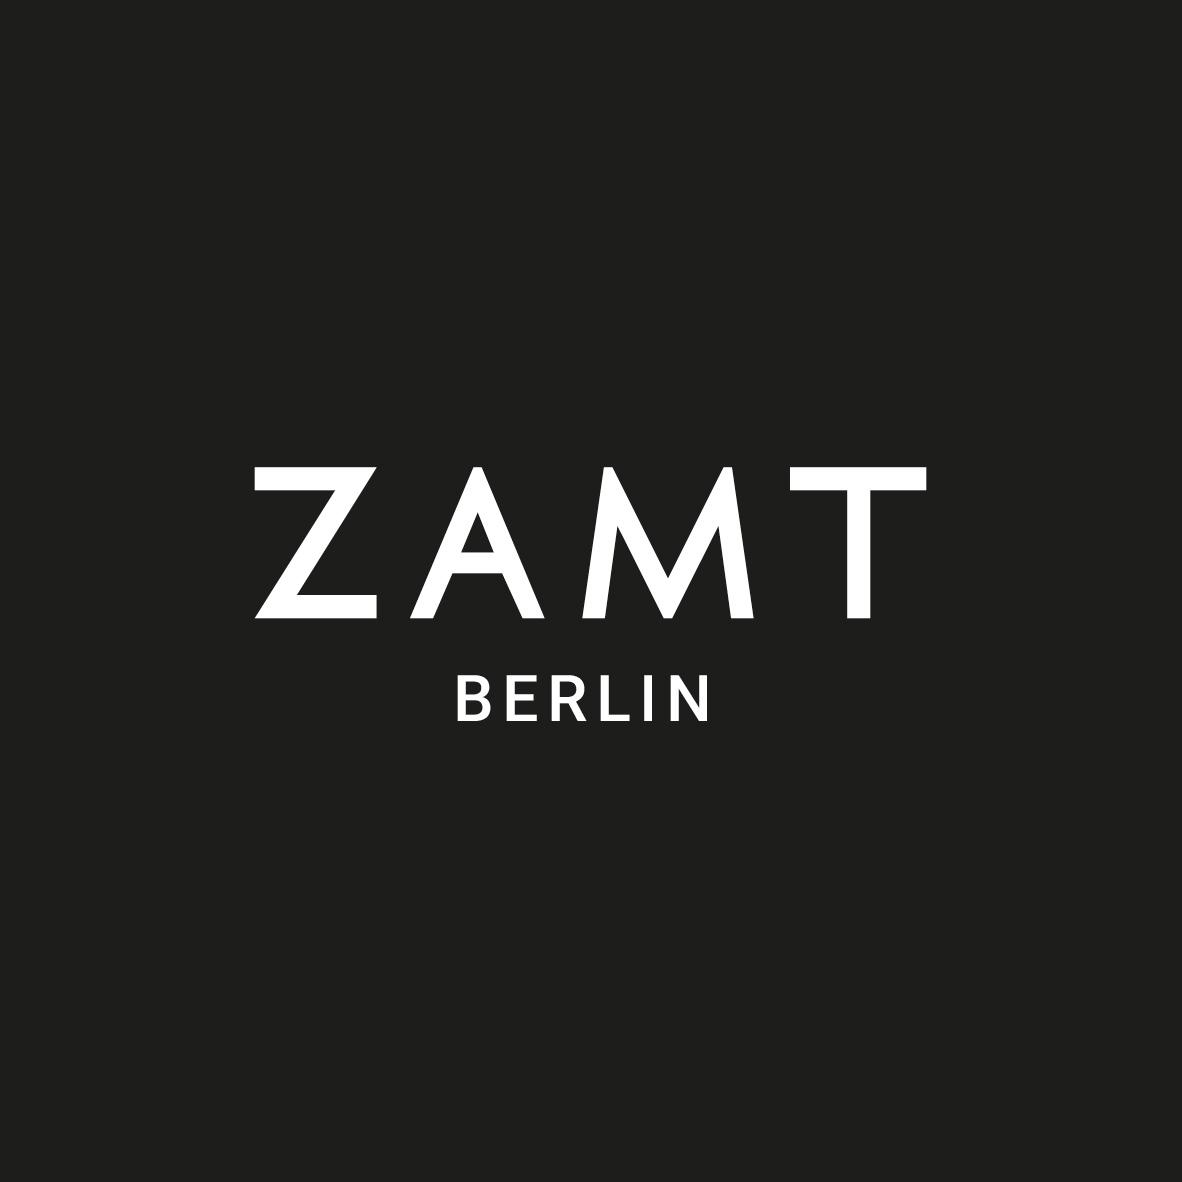 ZAMT BERLIN